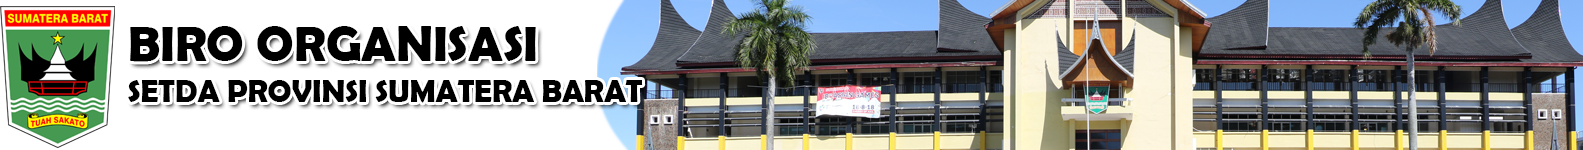 Biro Organisasi Setda Provinsi Sumatera Barat